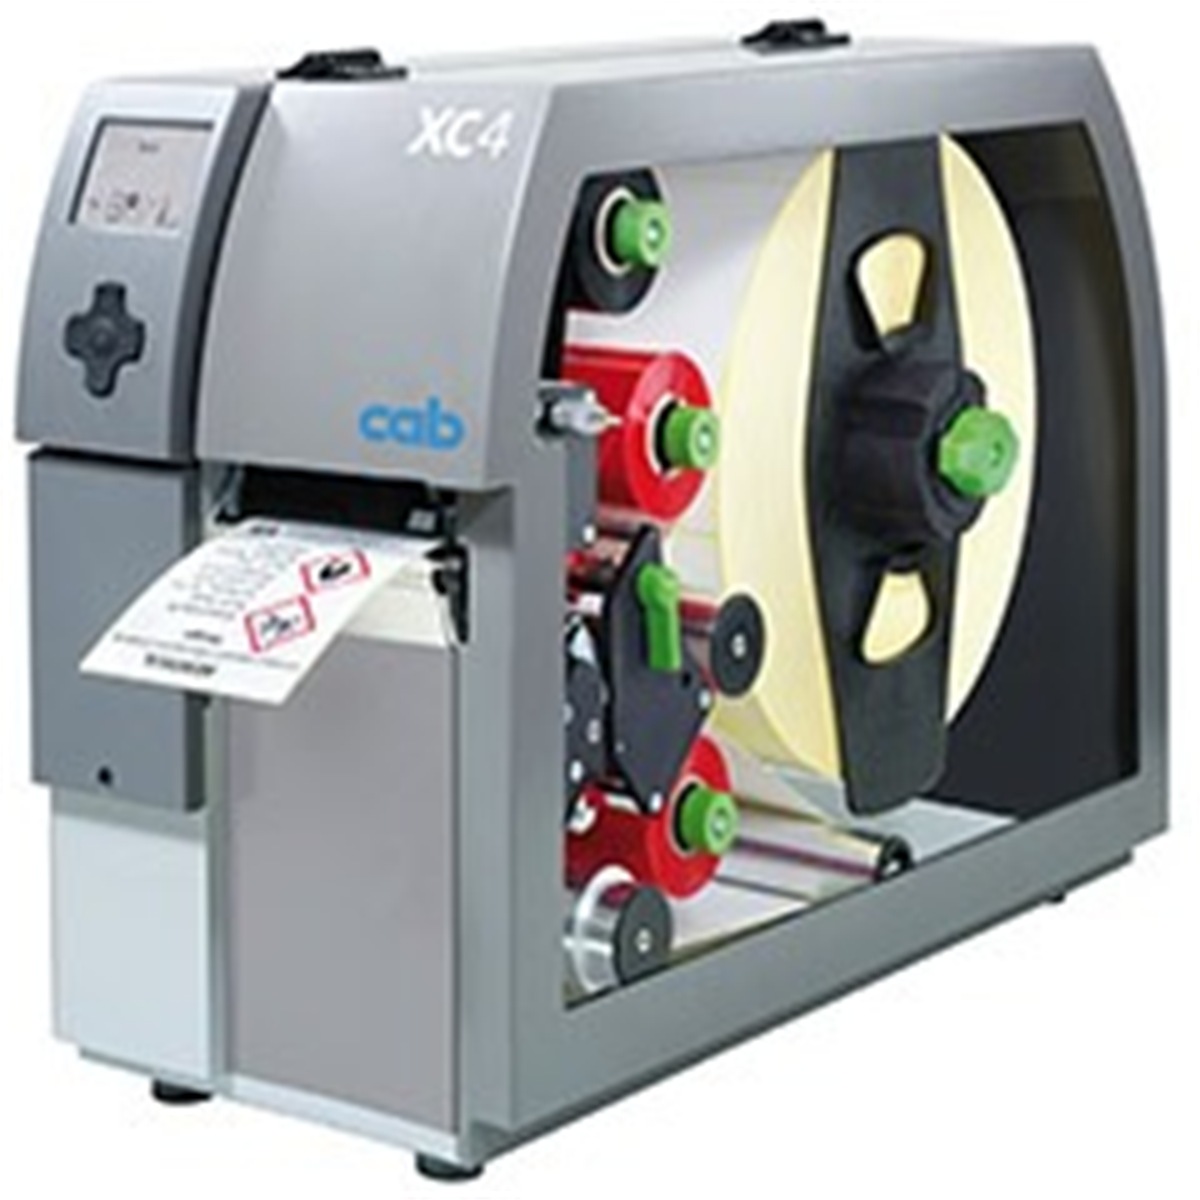 cab xc4 label printers